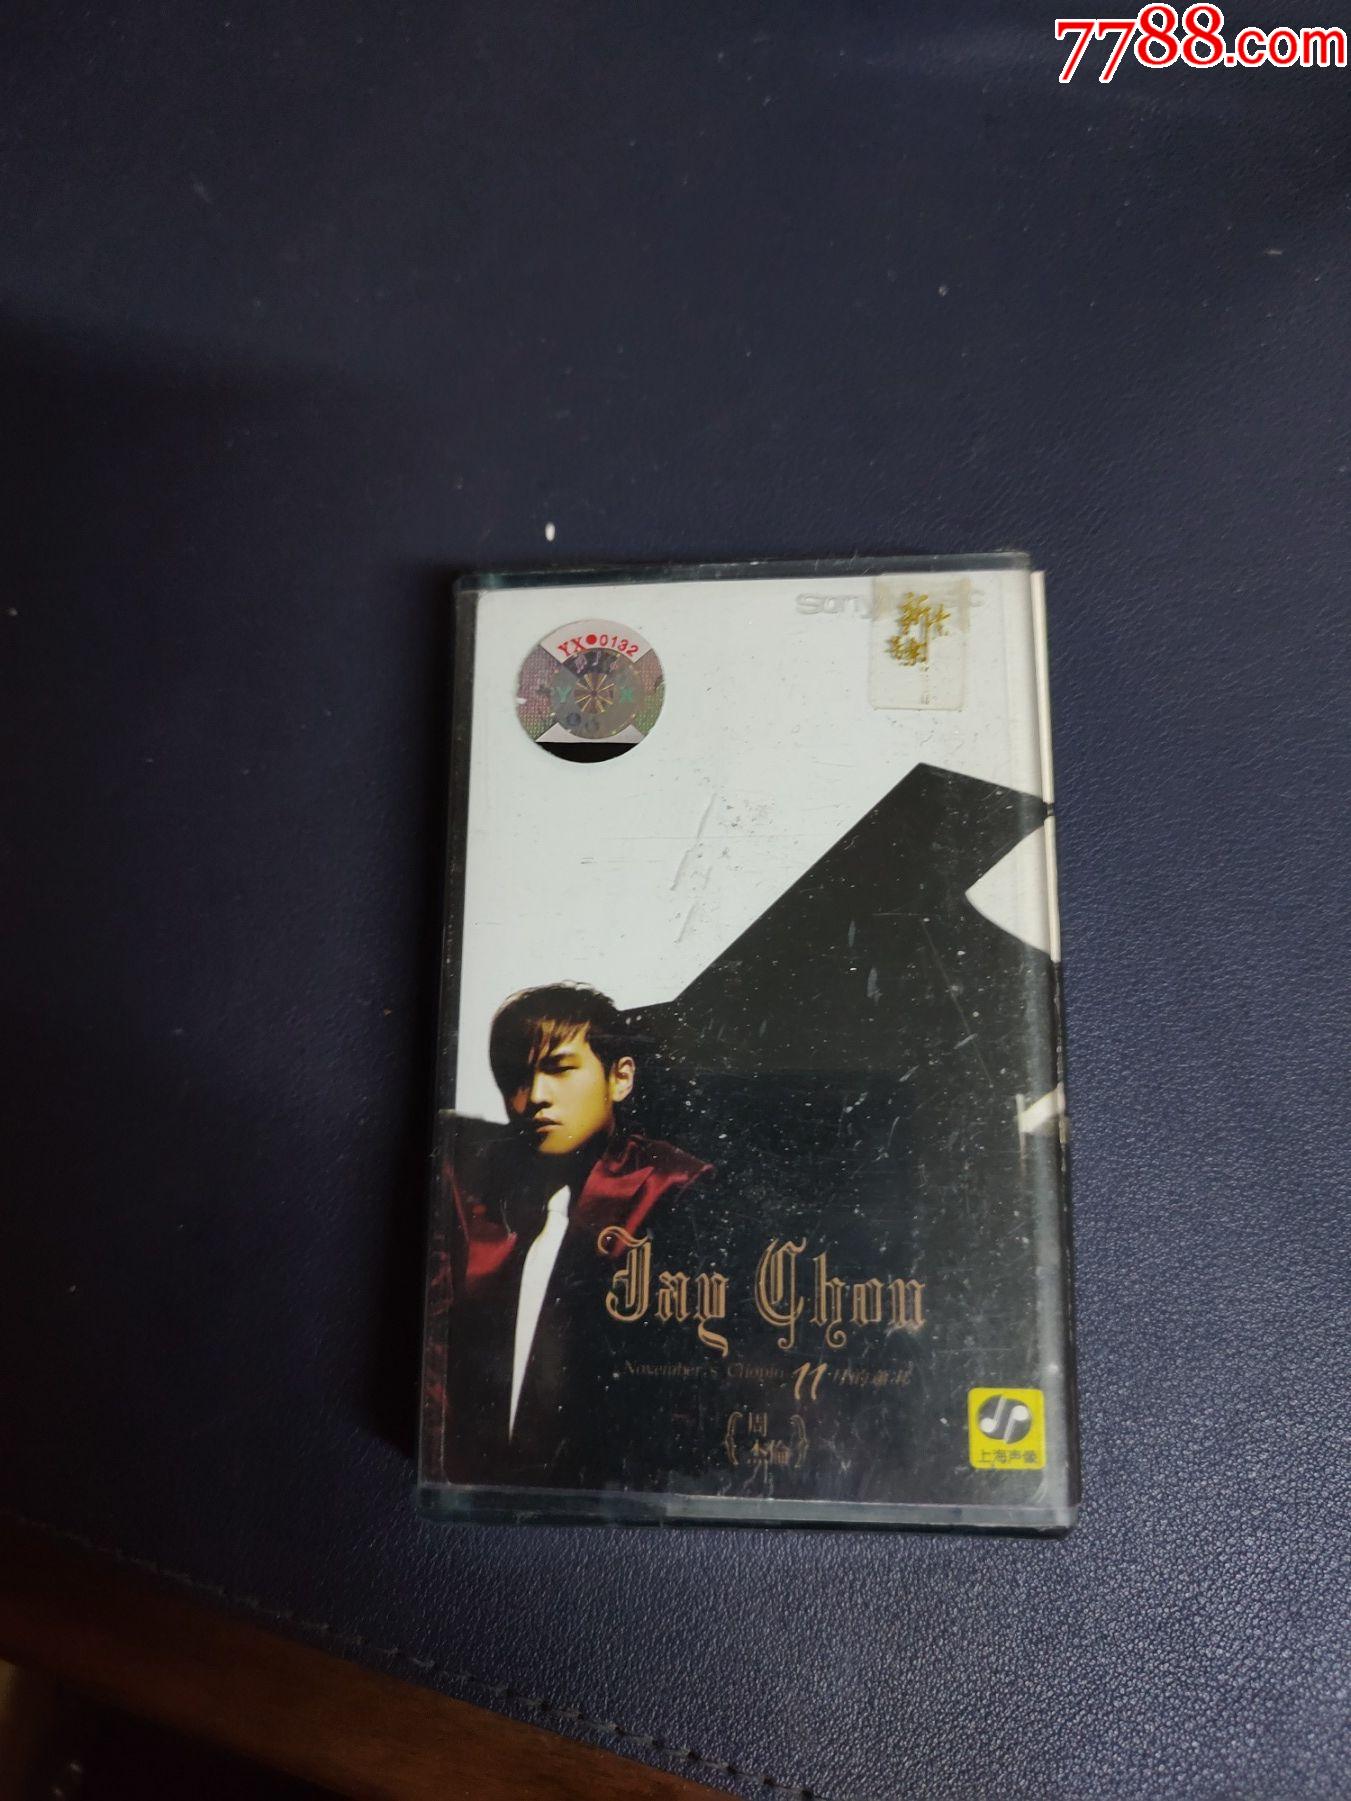 周杰伦11月的肖邦磁带新索供版上海声像出版社出版